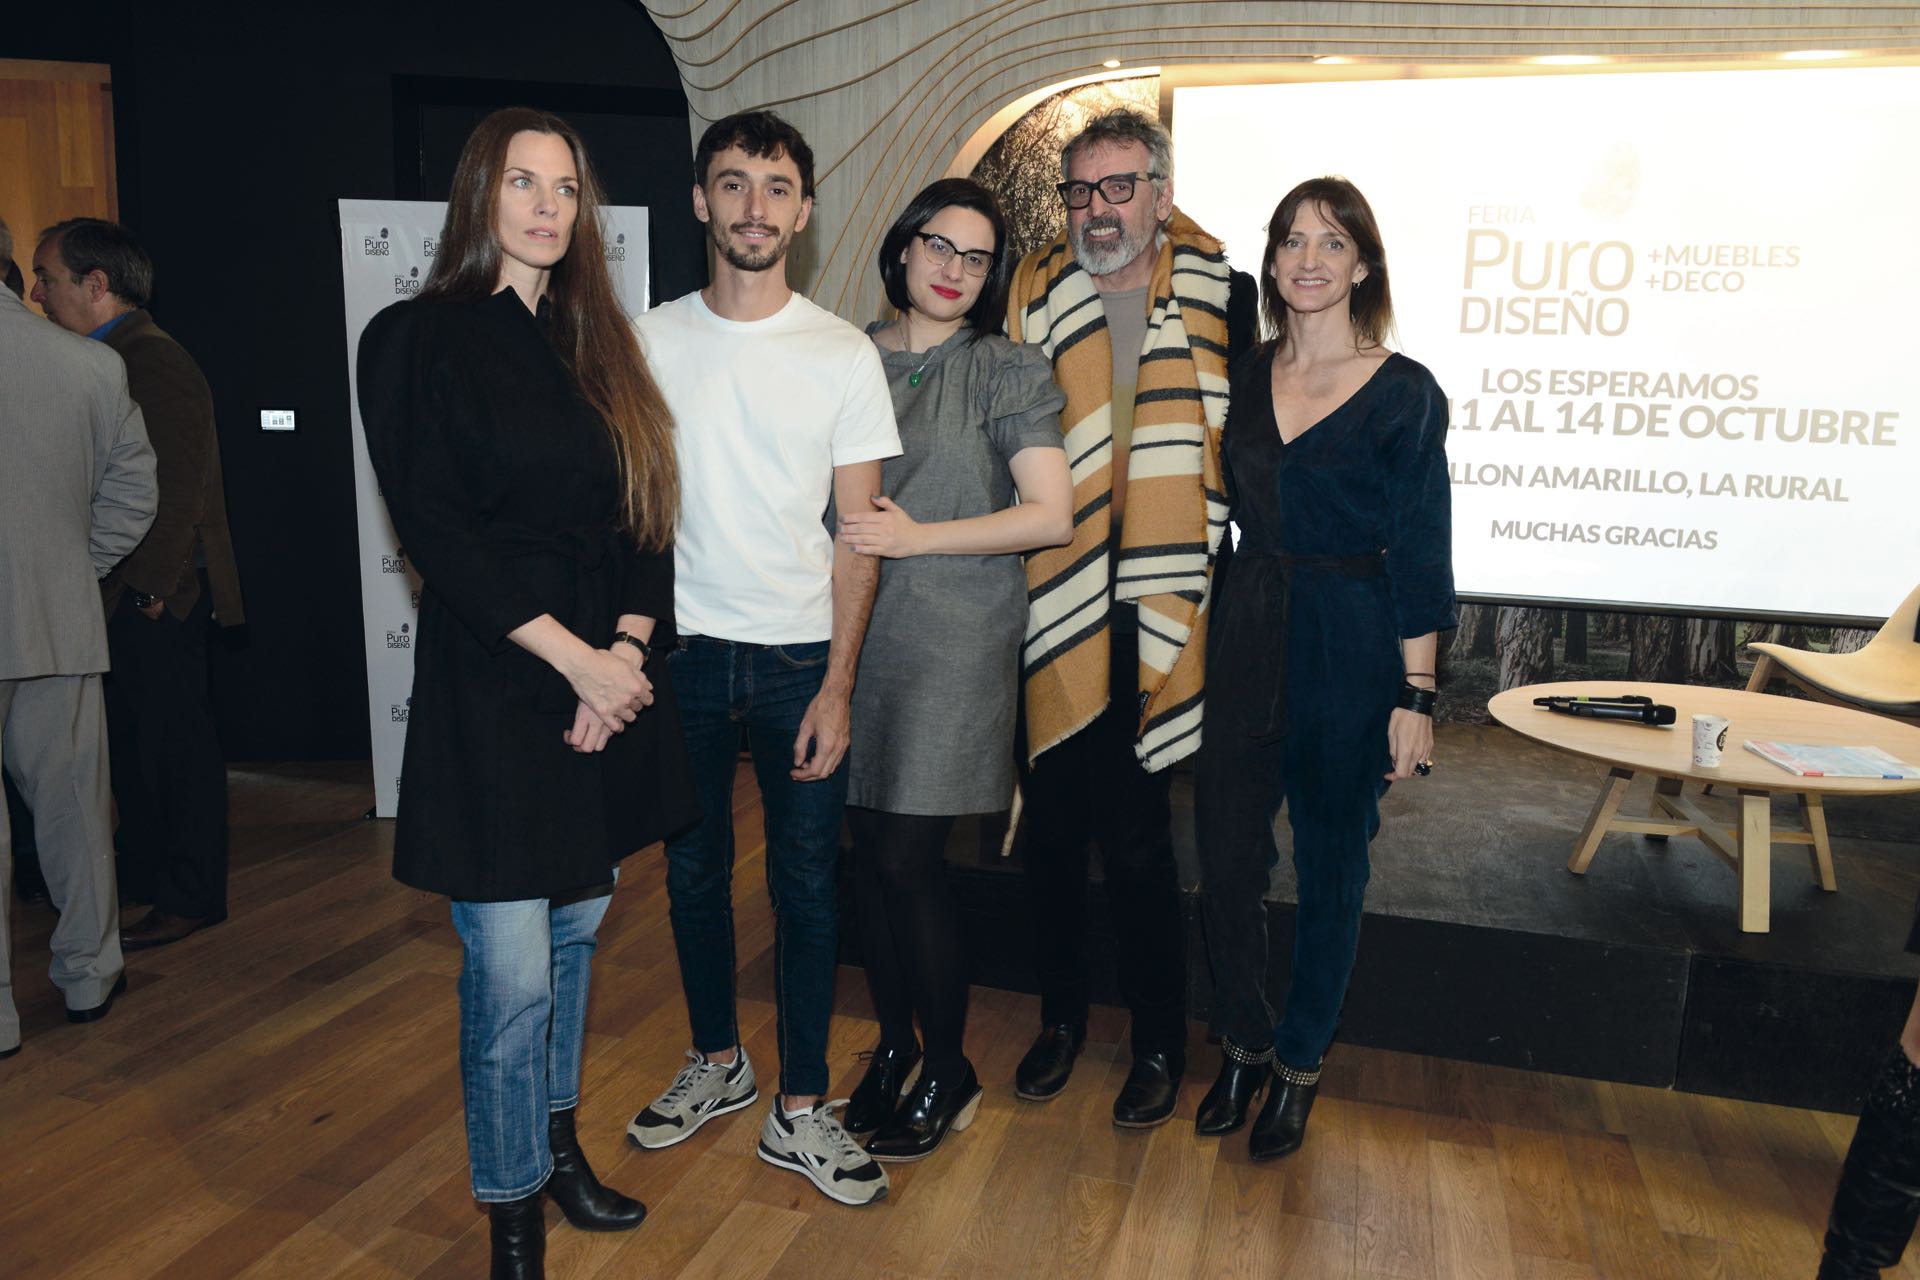 Team de curadores: Luisa Norbis, Marcelo Yarussi, Celeste Nasimbera, Benito Fernández y Marcela Molinari.